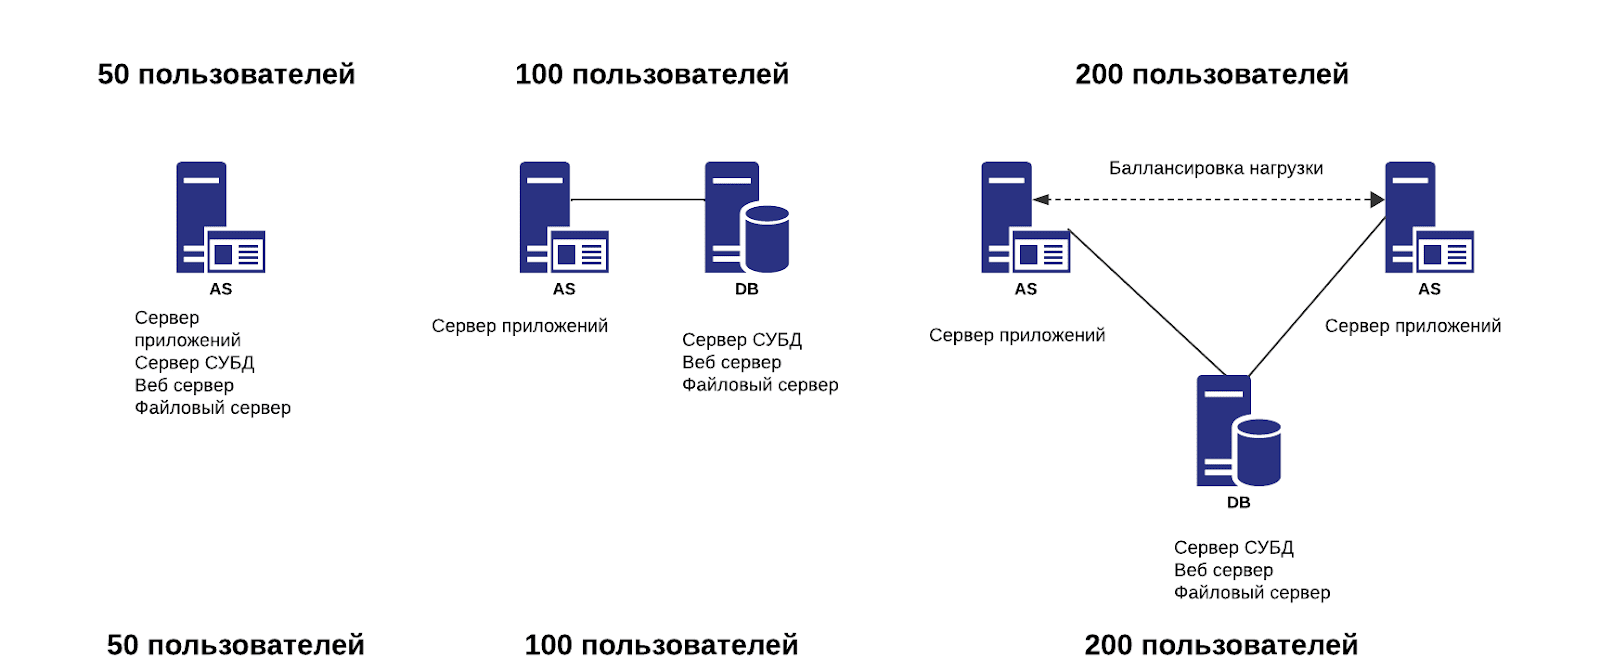 Схемы распределения серверных ролей при использовании ТК  